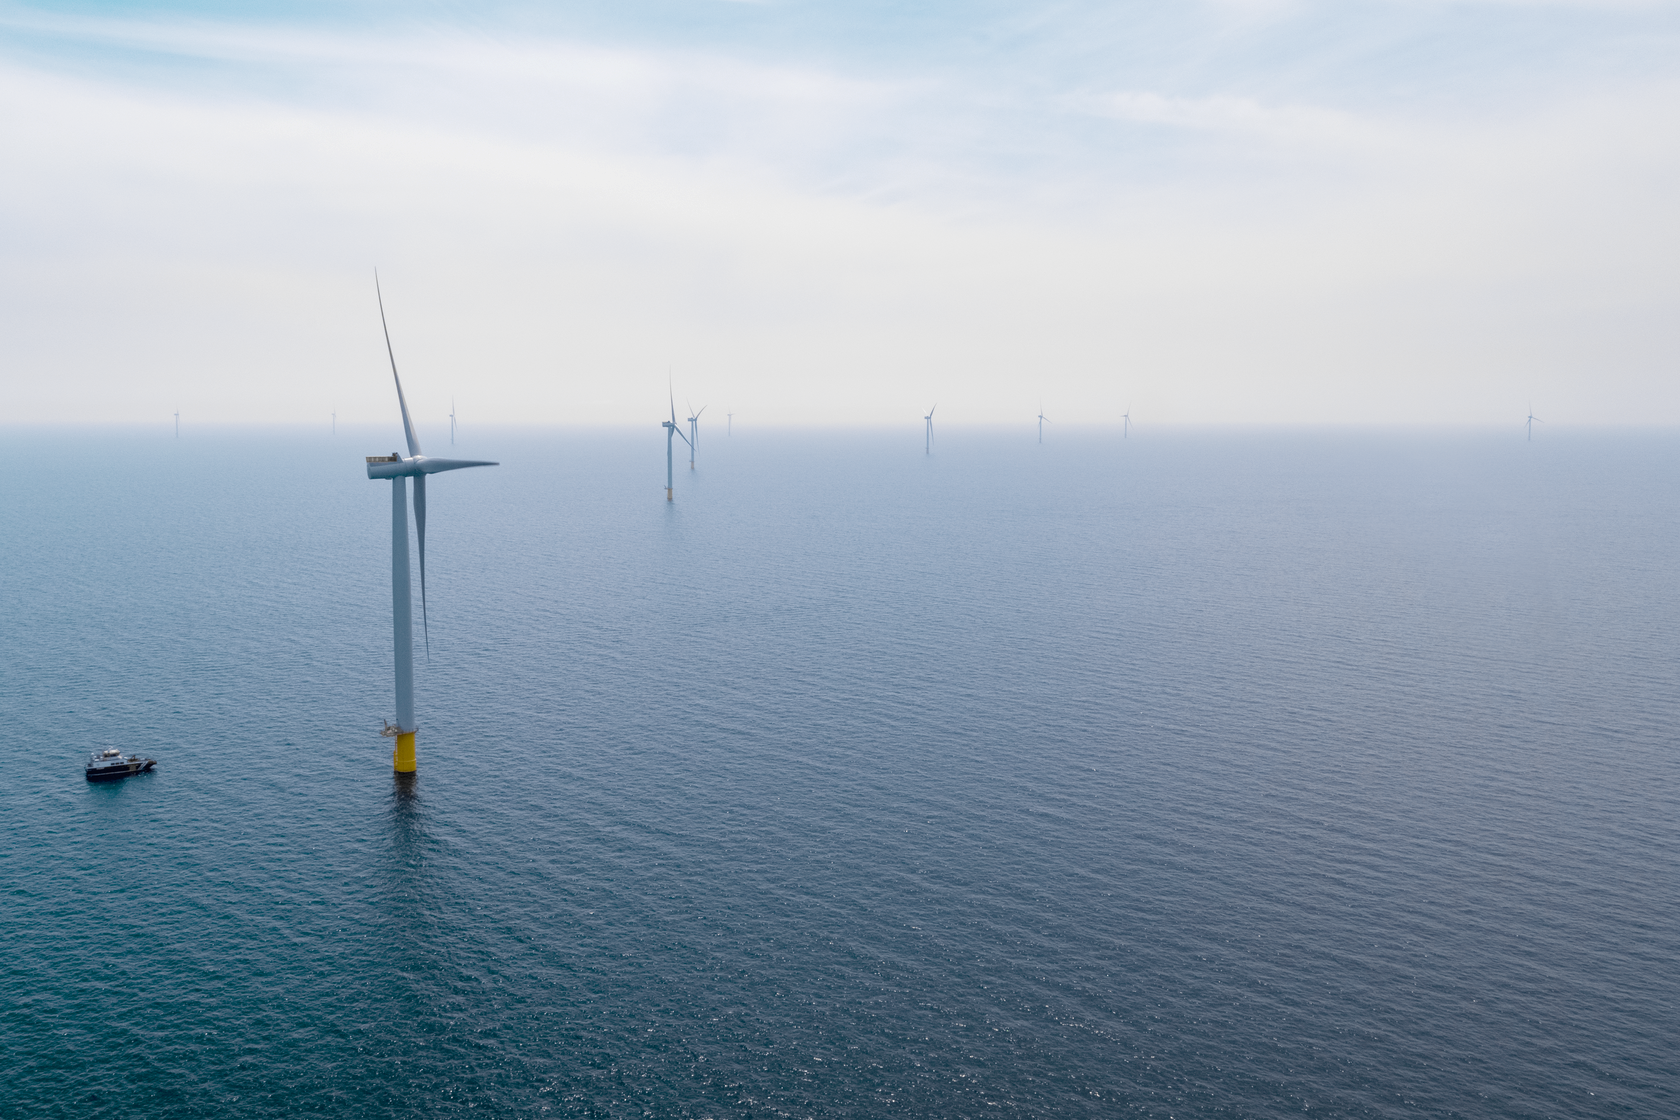 Kriegers Flak er et 600 MW offshore vindkraftanlegg under konstruksjon i Østersjøen på den danske delen av revet med samme navn. Det vil utgjøre en del av en ny 400 MW interkobling mellom Danmark og Tyskland.